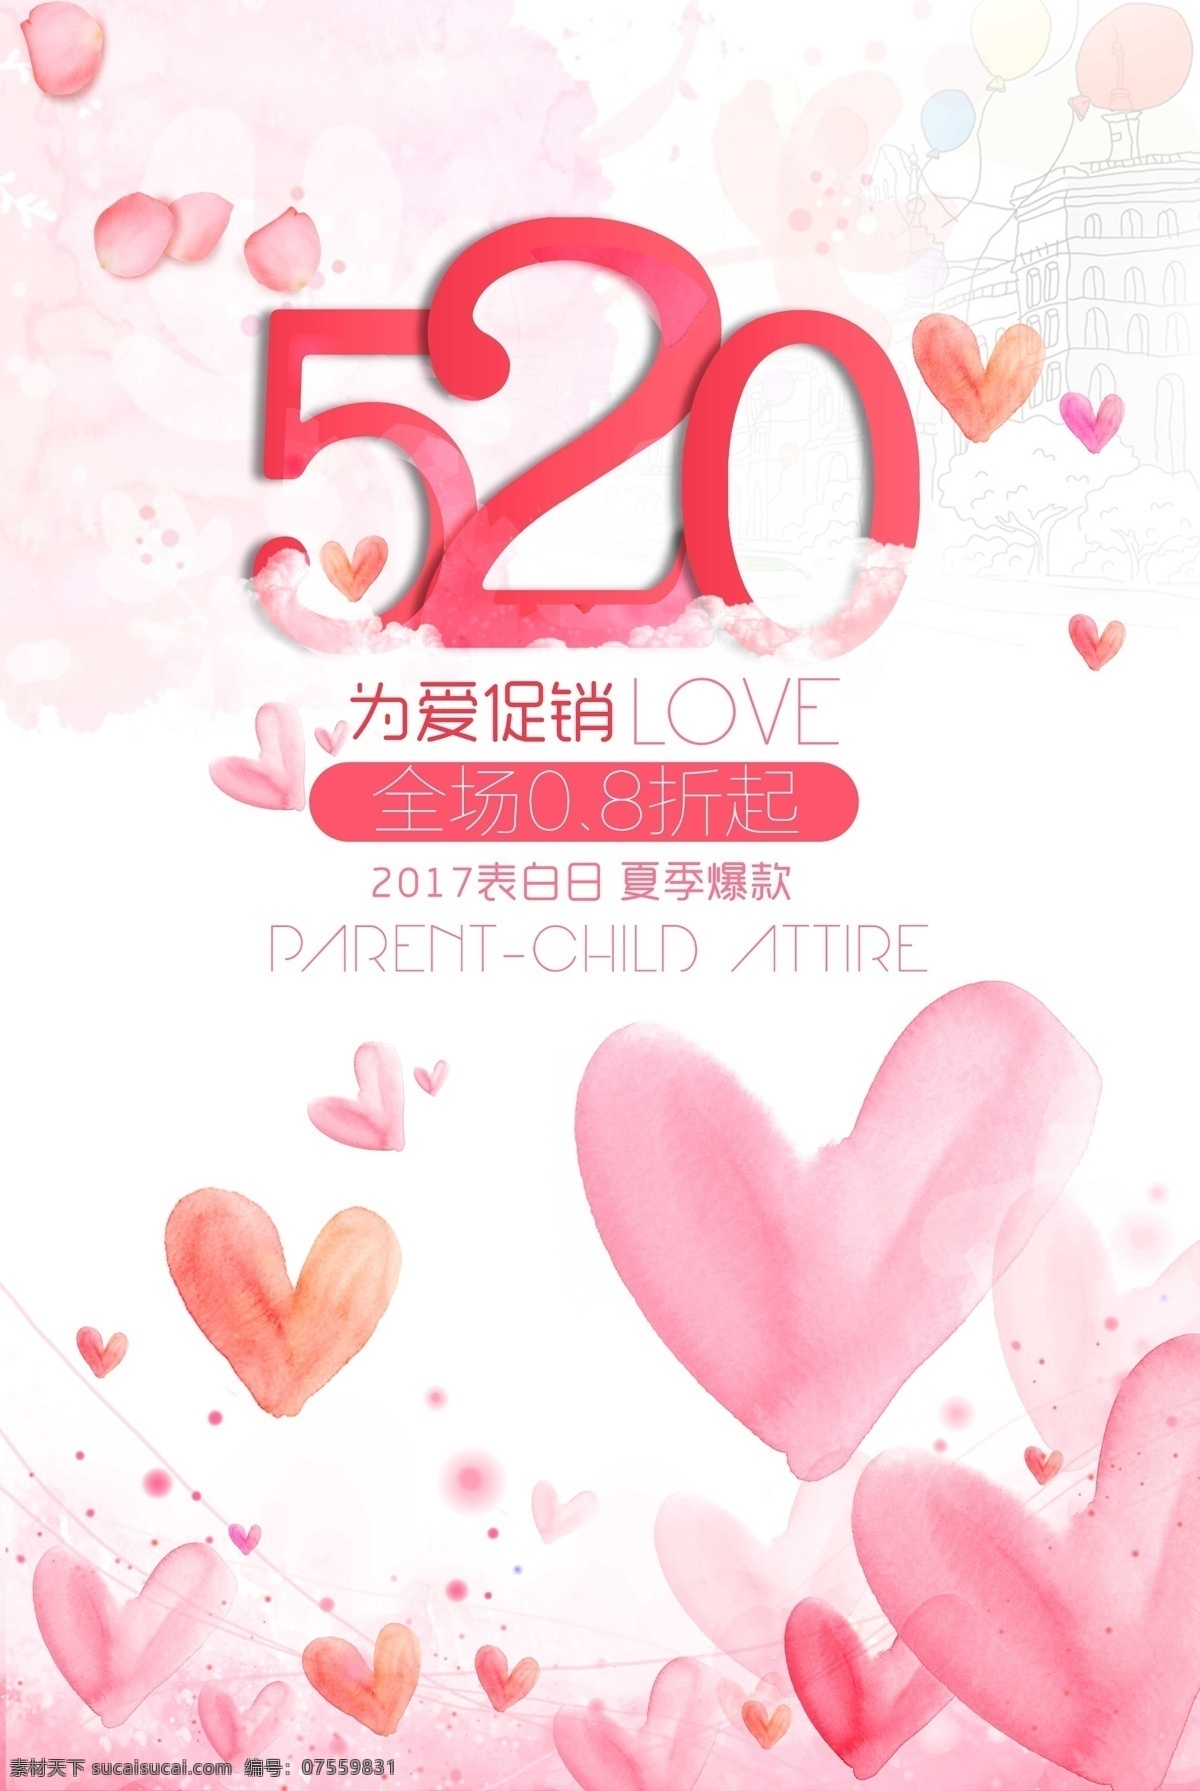 520 浪漫 价 情人节 促销 海报 玫红色 喜迎浪漫 幸福购物 飘落的花瓣 心形气球 氢气球